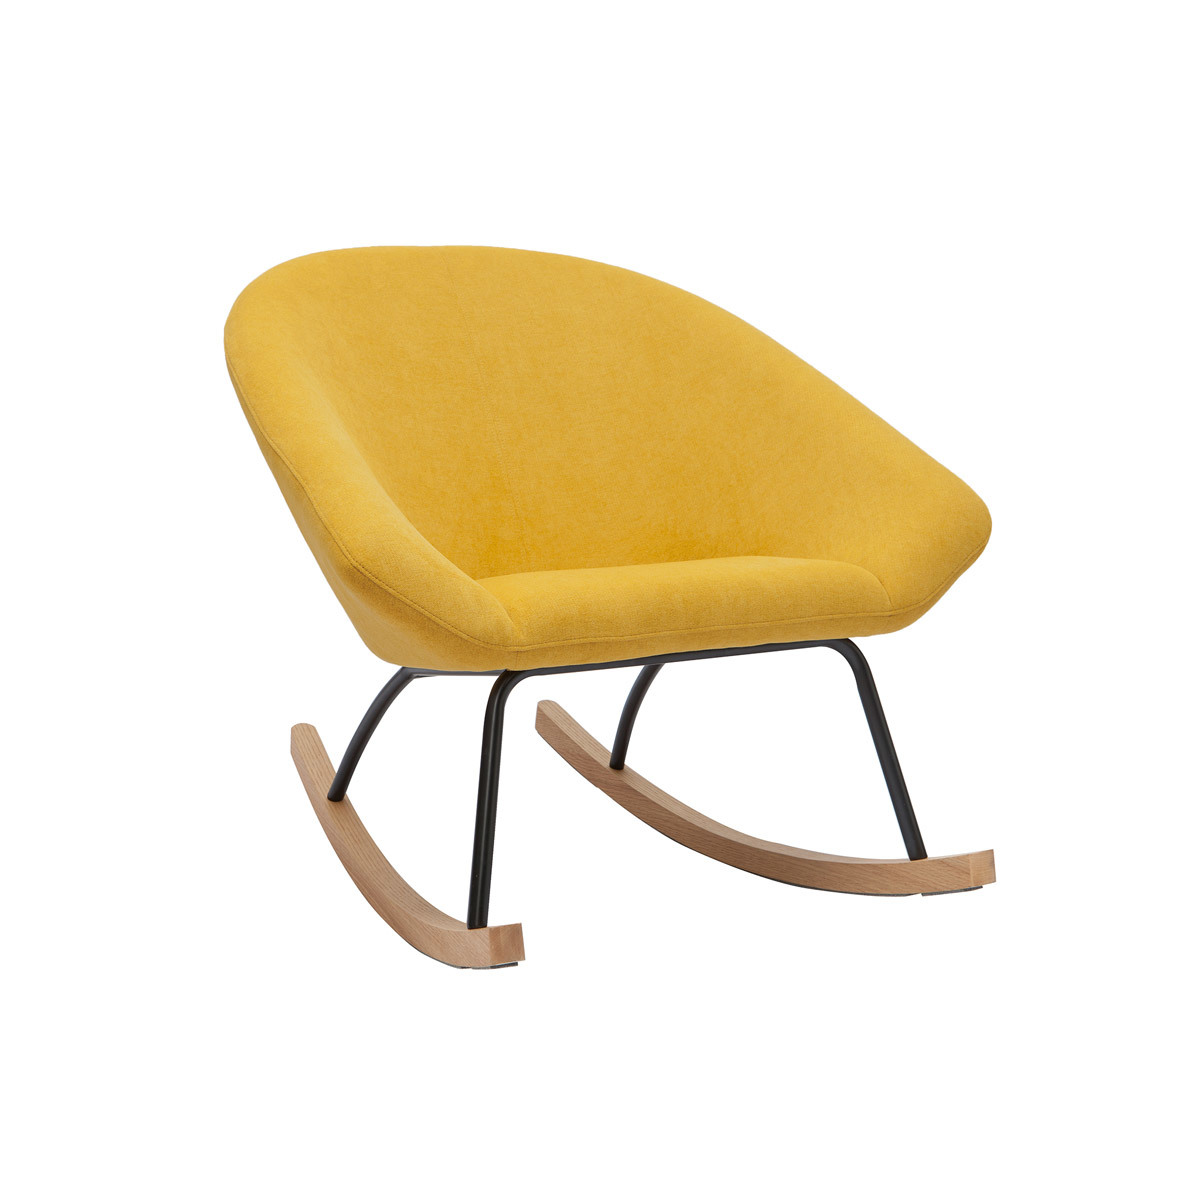 Rocking chair design en tissu effet velours jaune moutarde, métal noir et bois clair KOK vue1